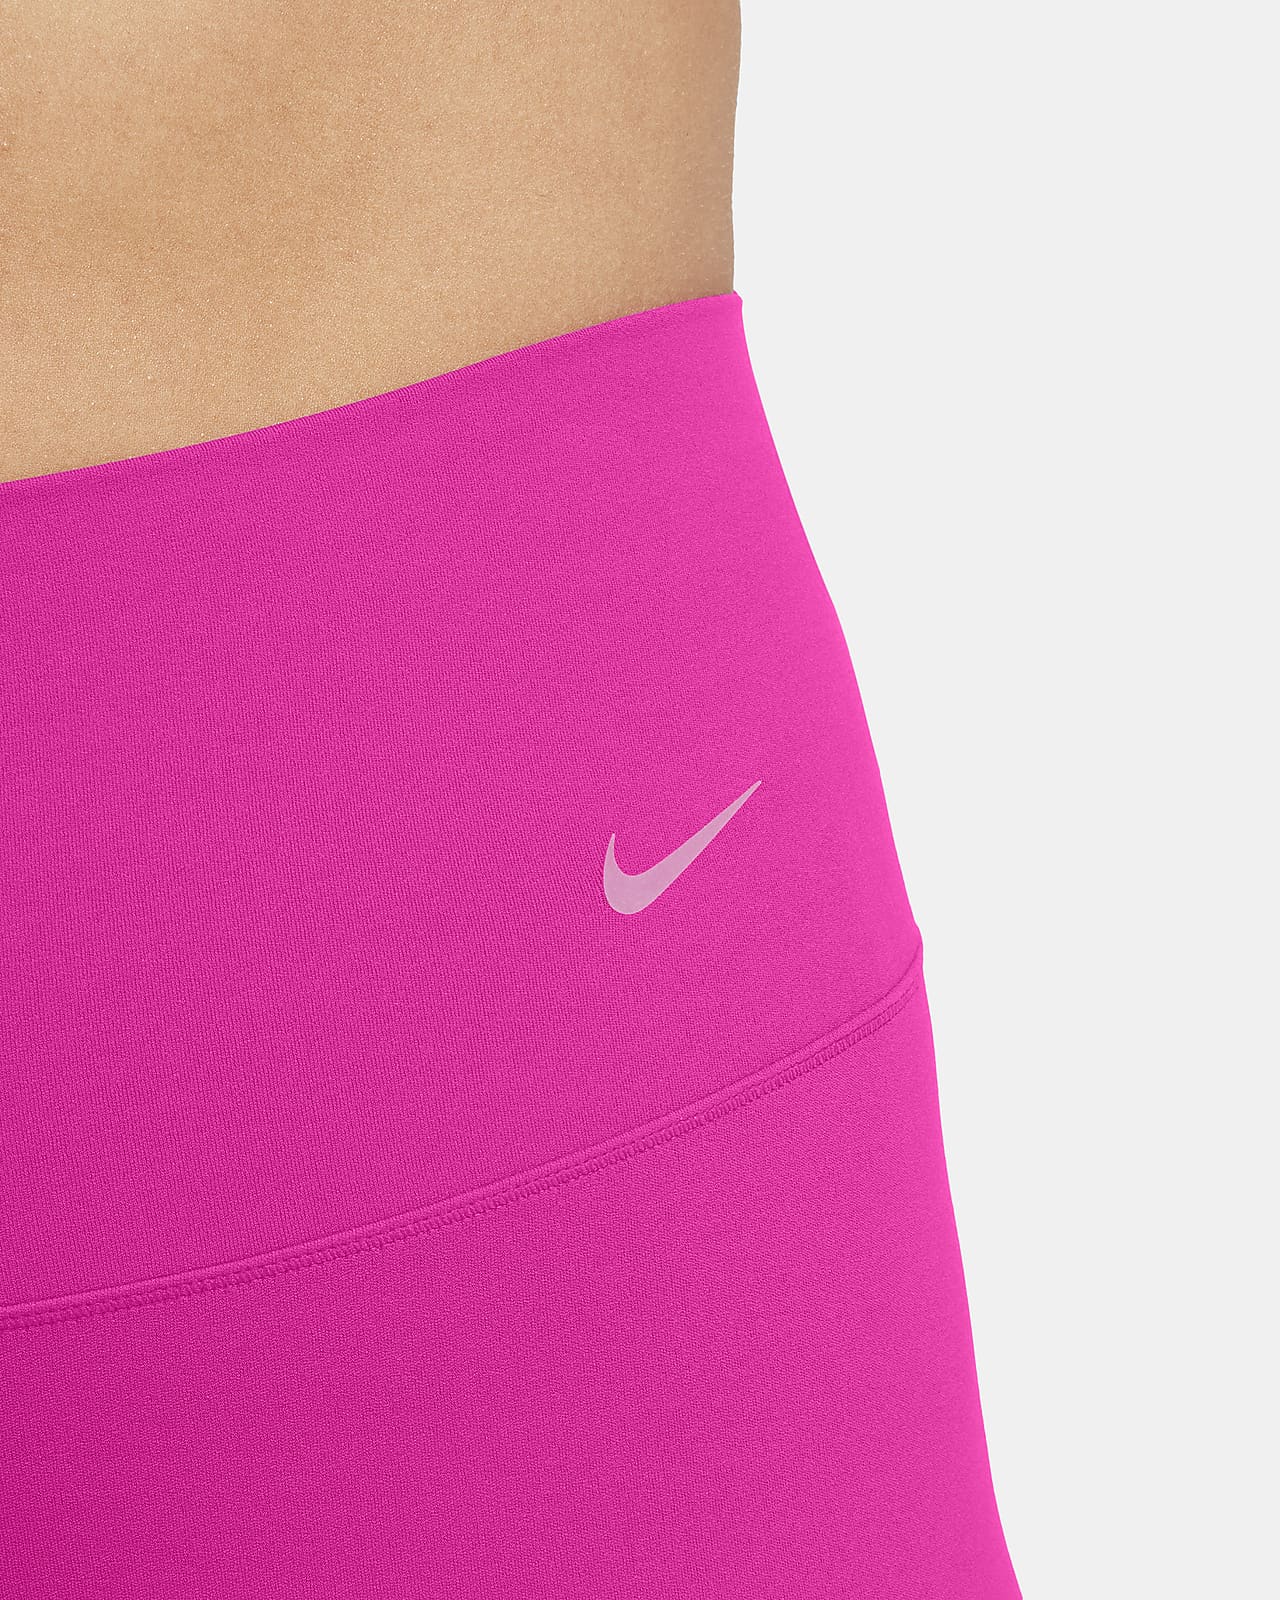 Nike Zenvy Women's Gentle-Support High-Waisted 7/8 Leggings. Nike.com